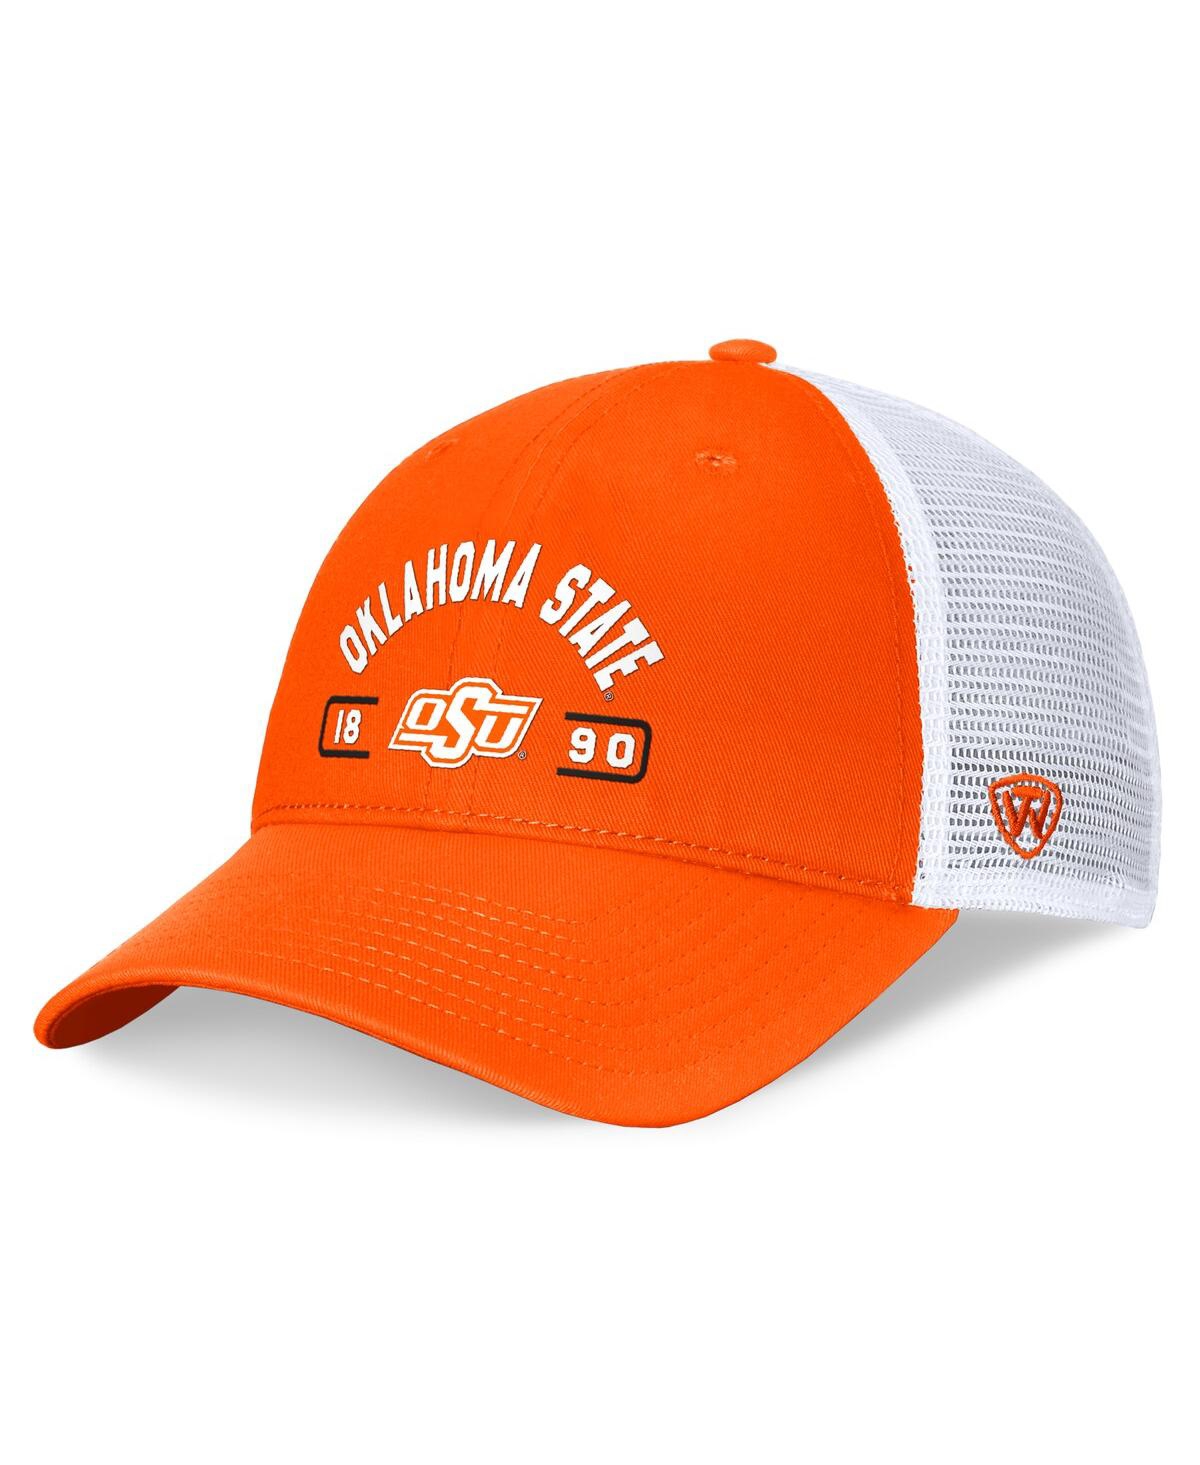 Men's Orange/White Oklahoma State Cowboys Free Kick Trucker Adjustable Hat - Orange, White